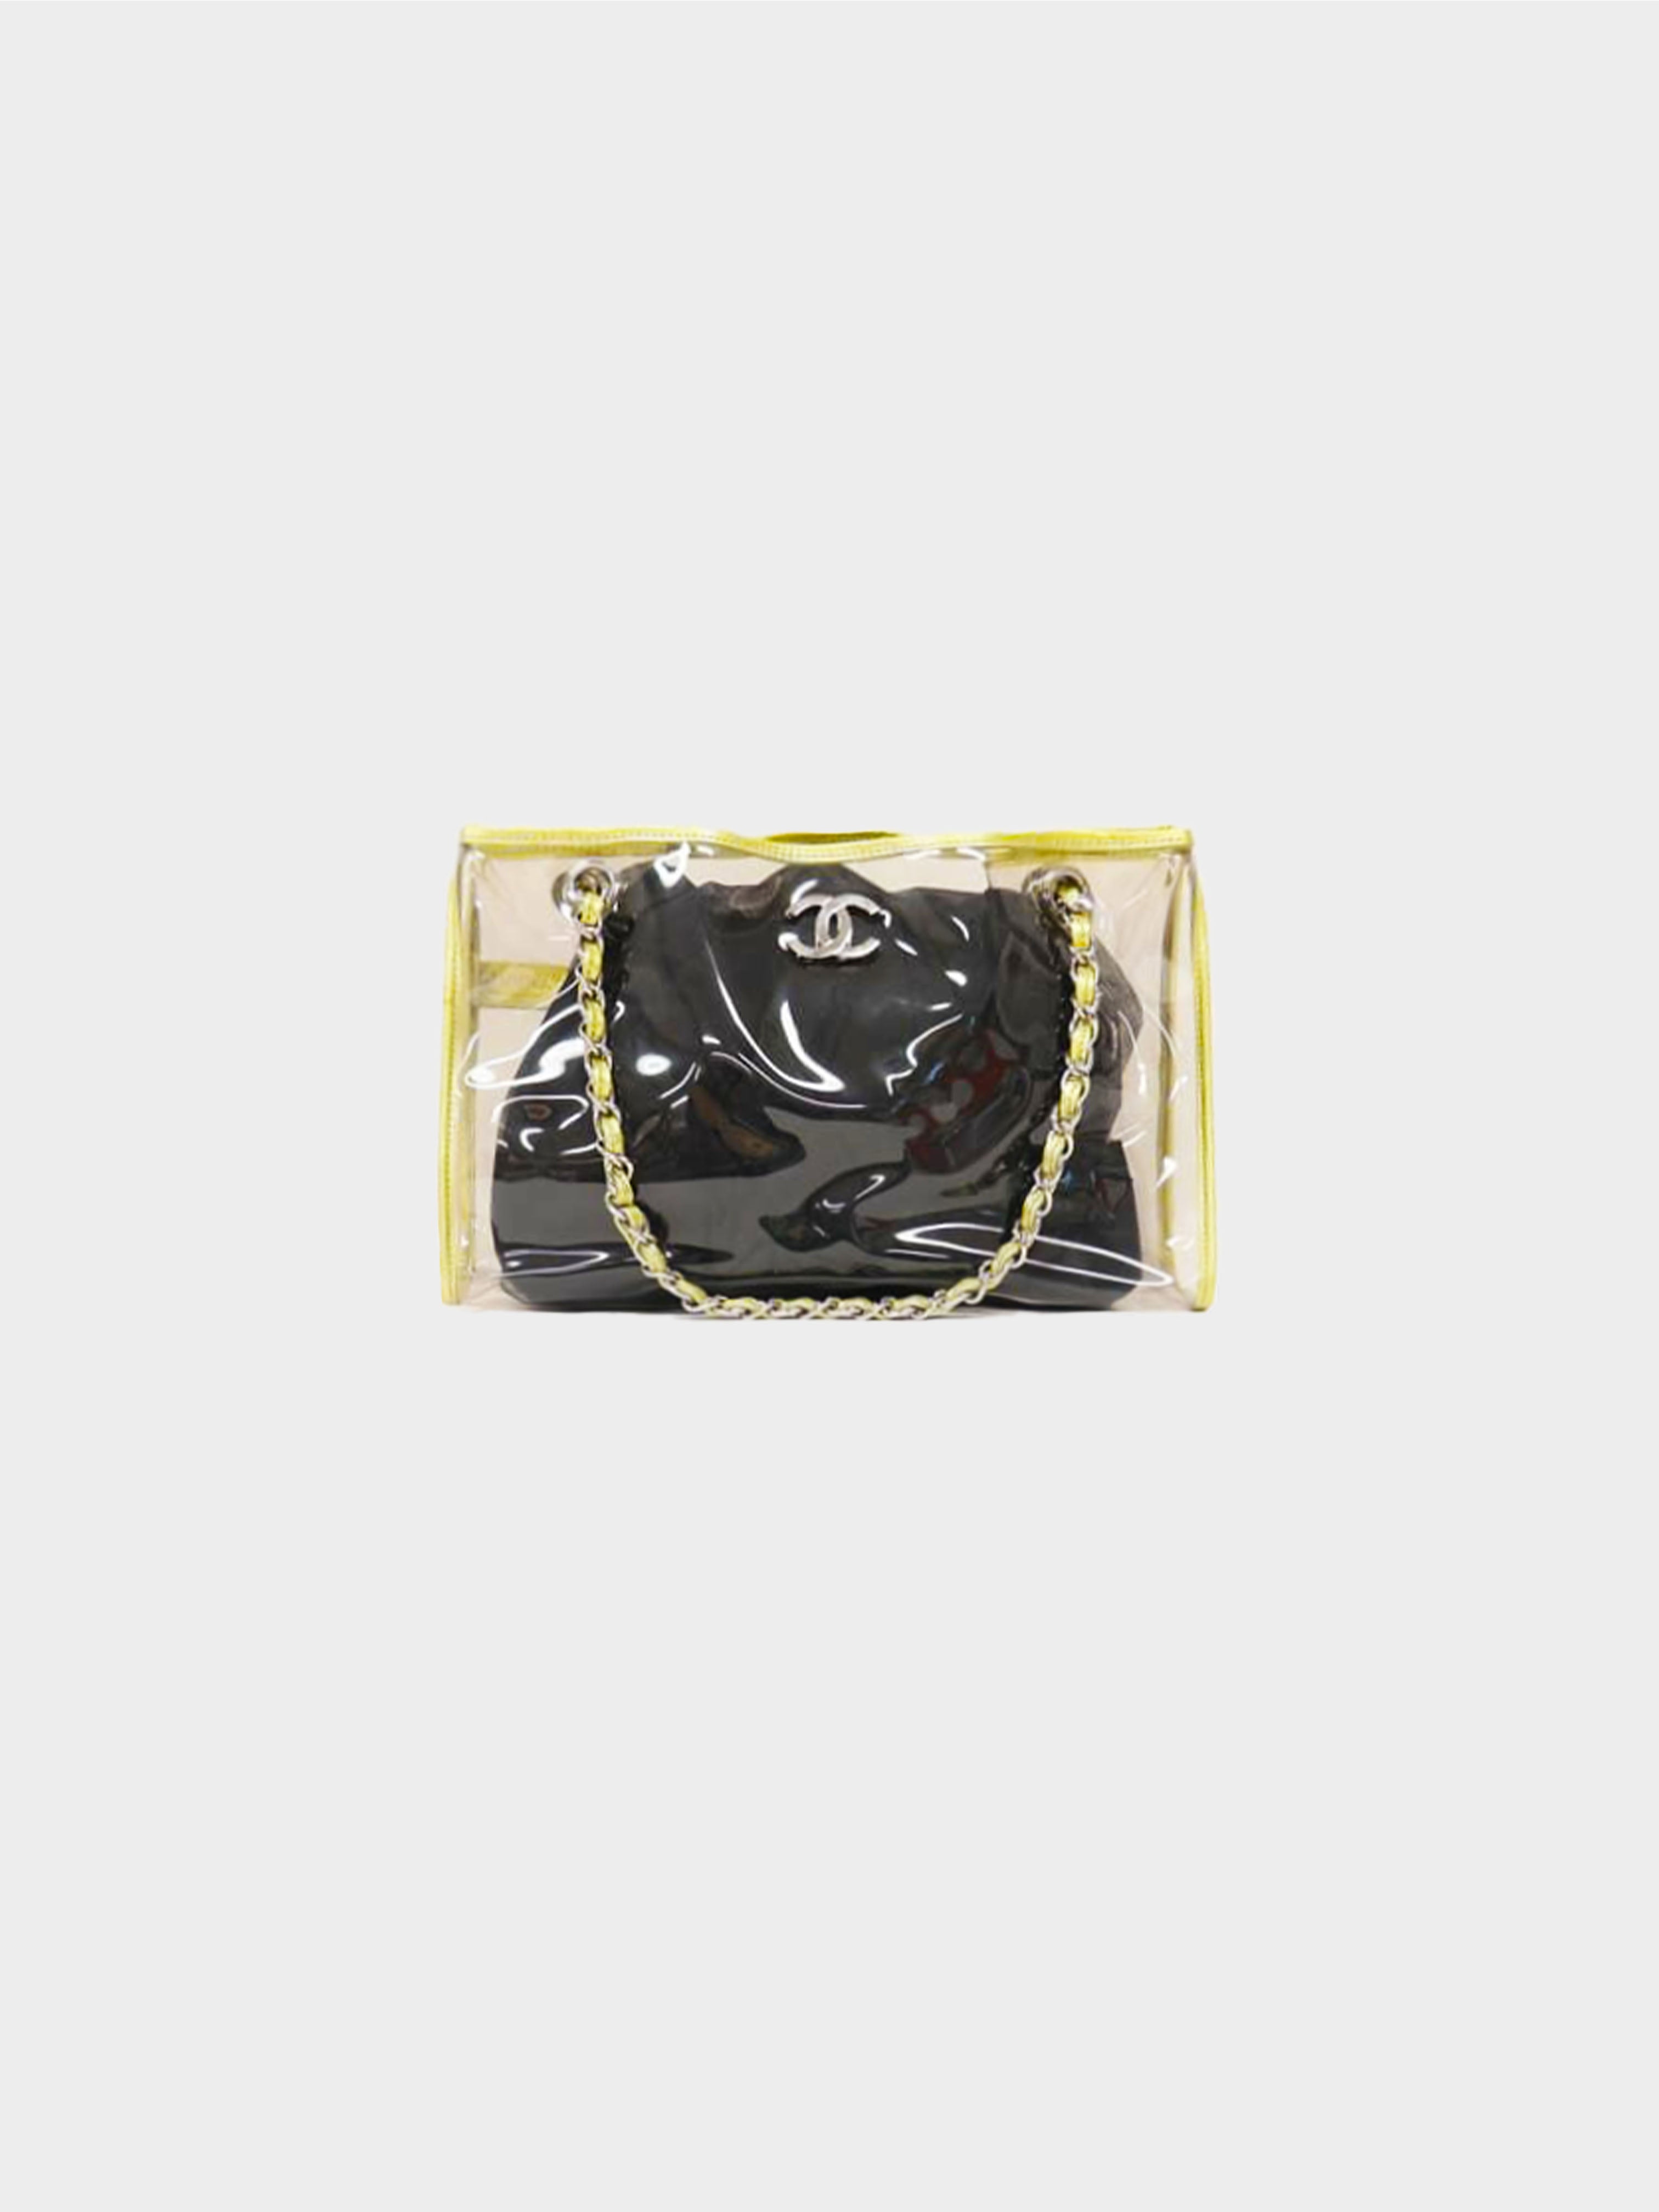 Chanel PVC 2000s Rare Multi-Color Flap Bag · INTO